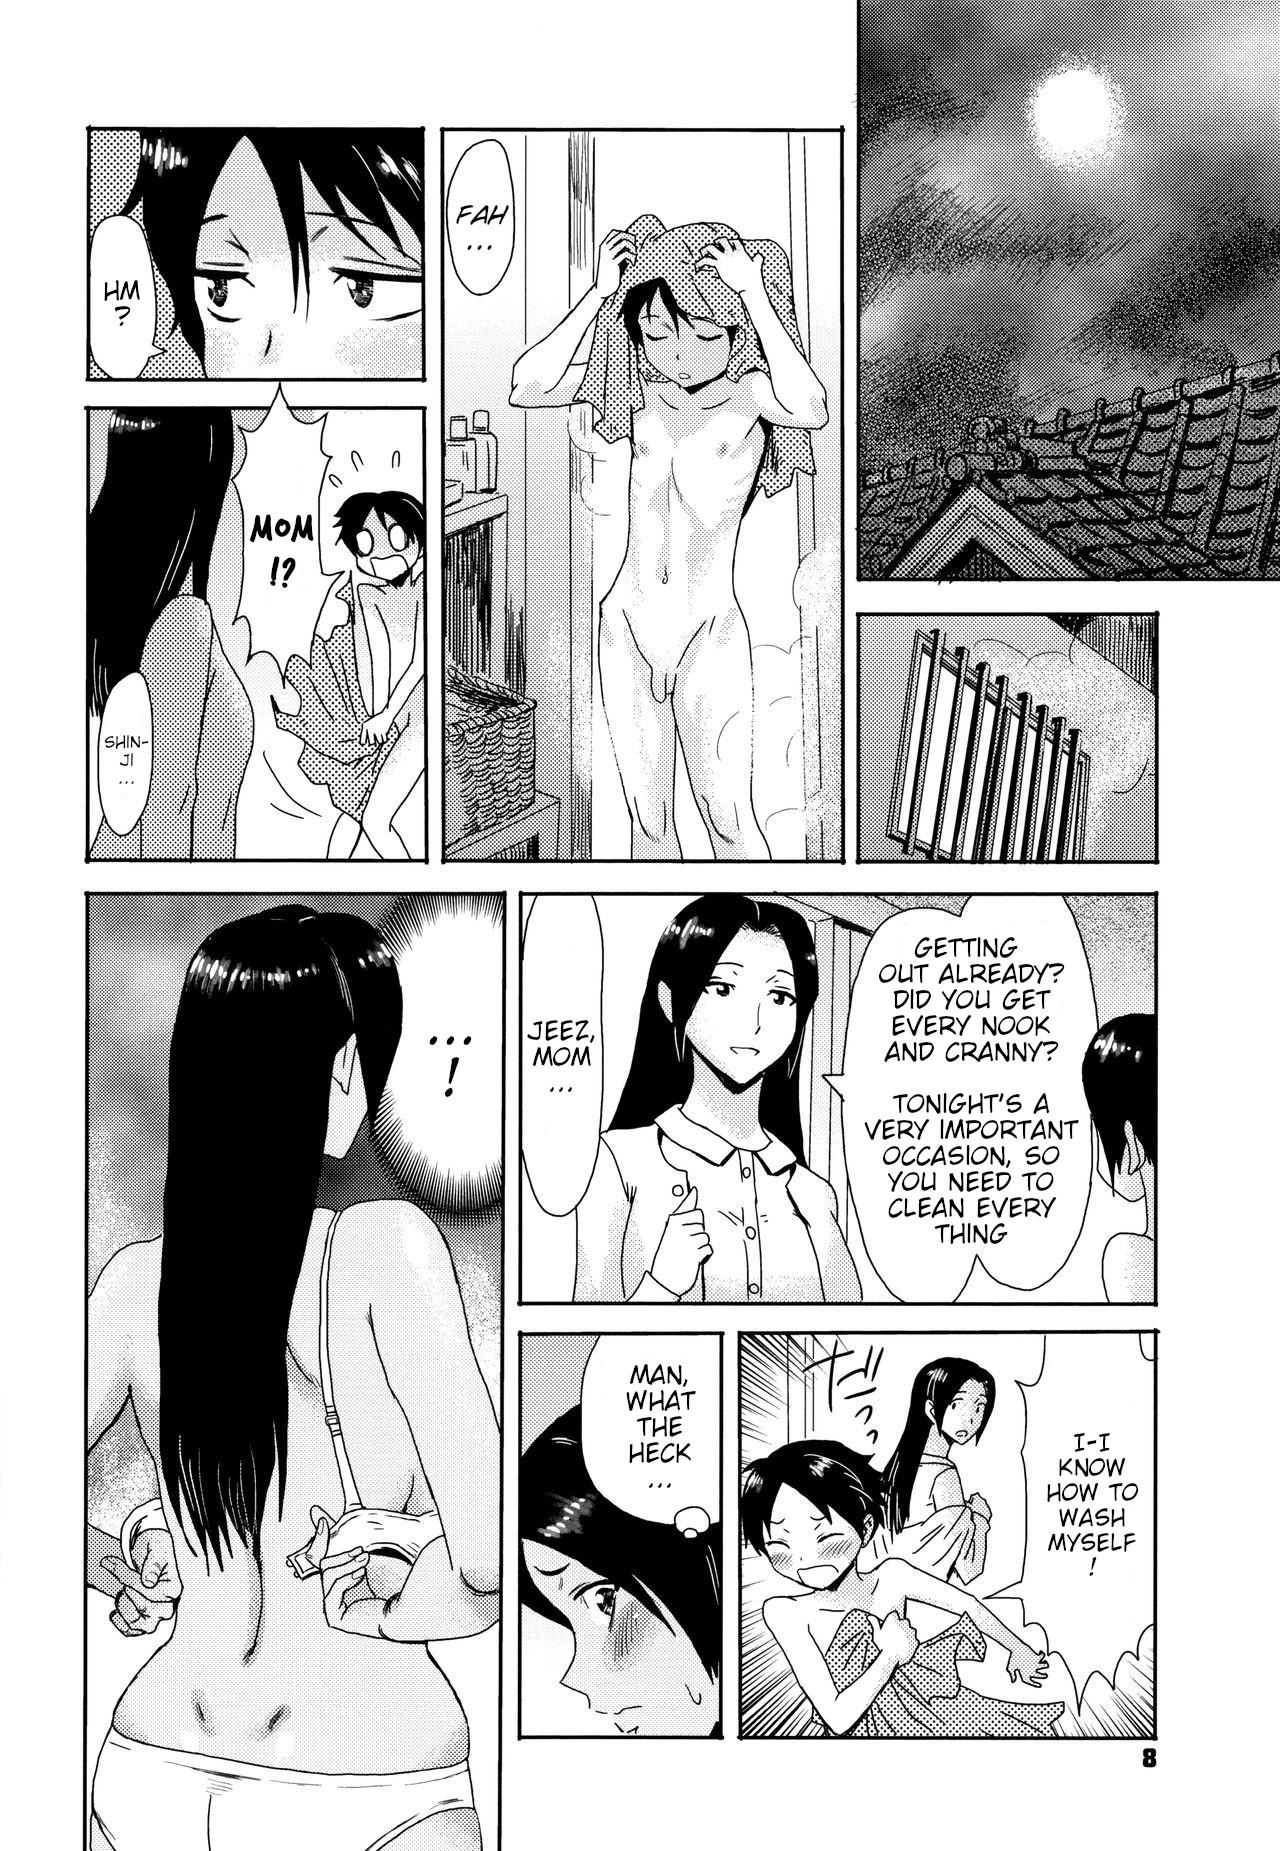 Topless Himegamisama Brasil - Page 2